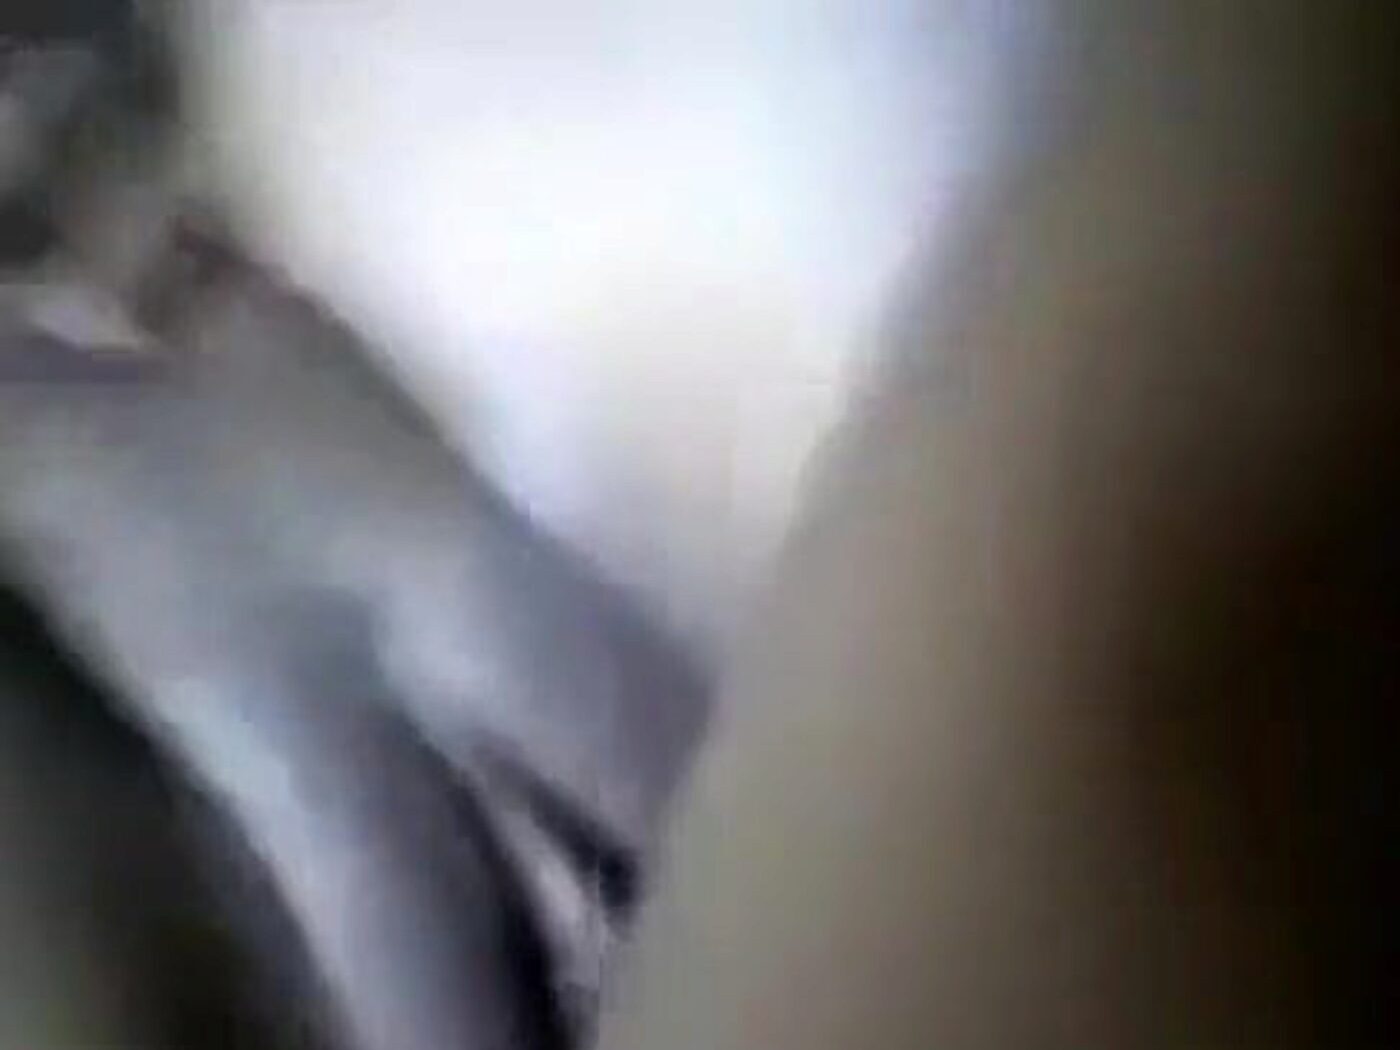 Amanda Peet sex tape - Порно видео найдено на заточка63.рф